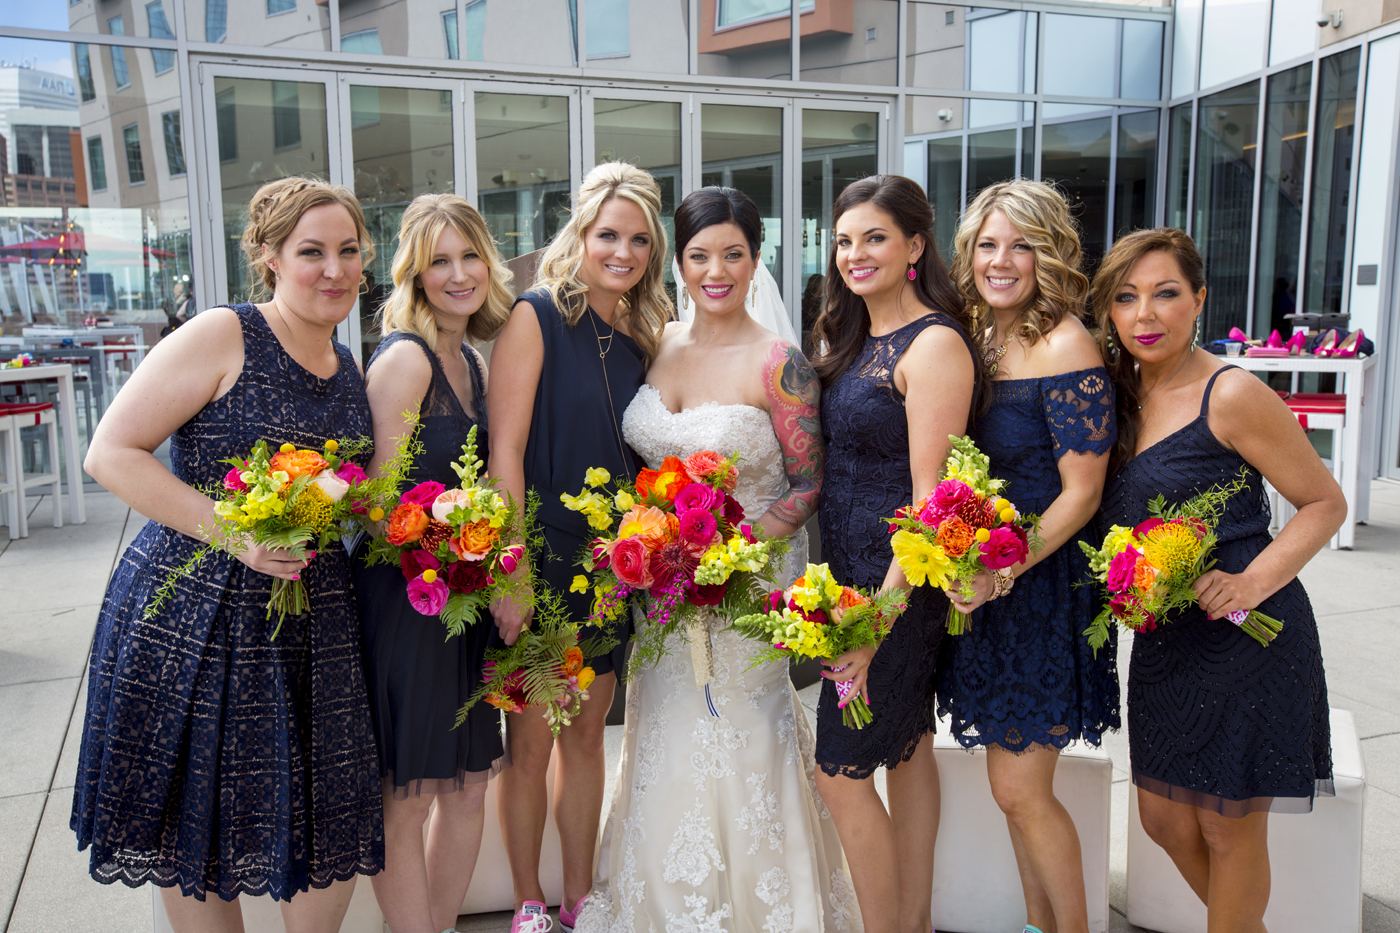 Vibrant Denver, Colorado City Hall Wedding -- Wedding Inspiration - The Overwhelmed Bride